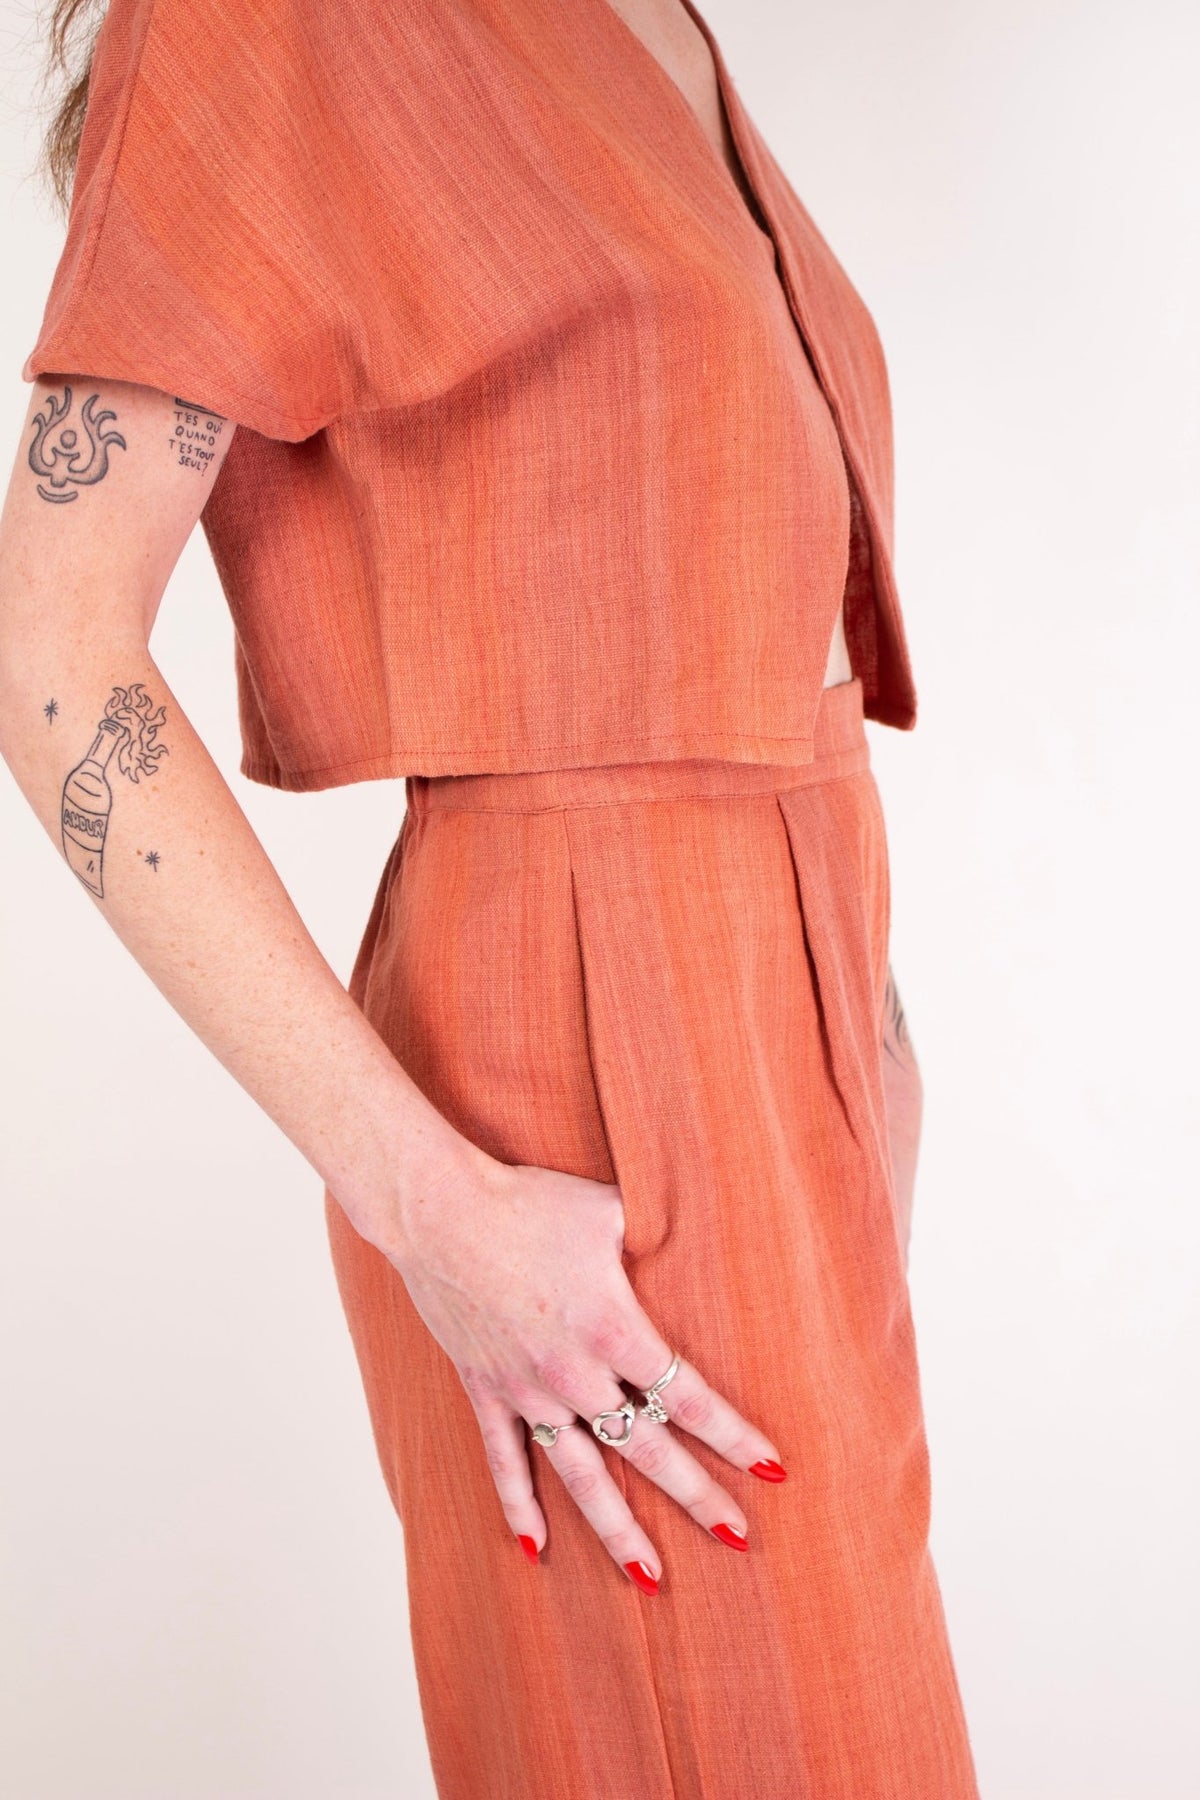 Pantalon SAGARA - Coton kala - Imprimé Coral Kala - Pantalon - Azaadi, la mode responsable accessible